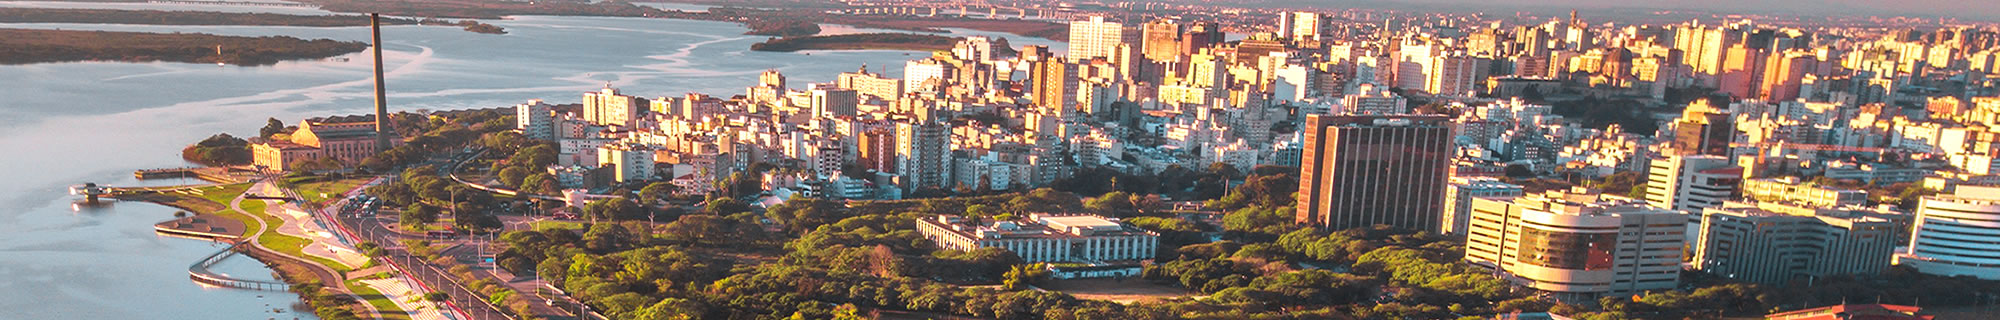 Imagem aérea do cais e o centro de Porto Alegre